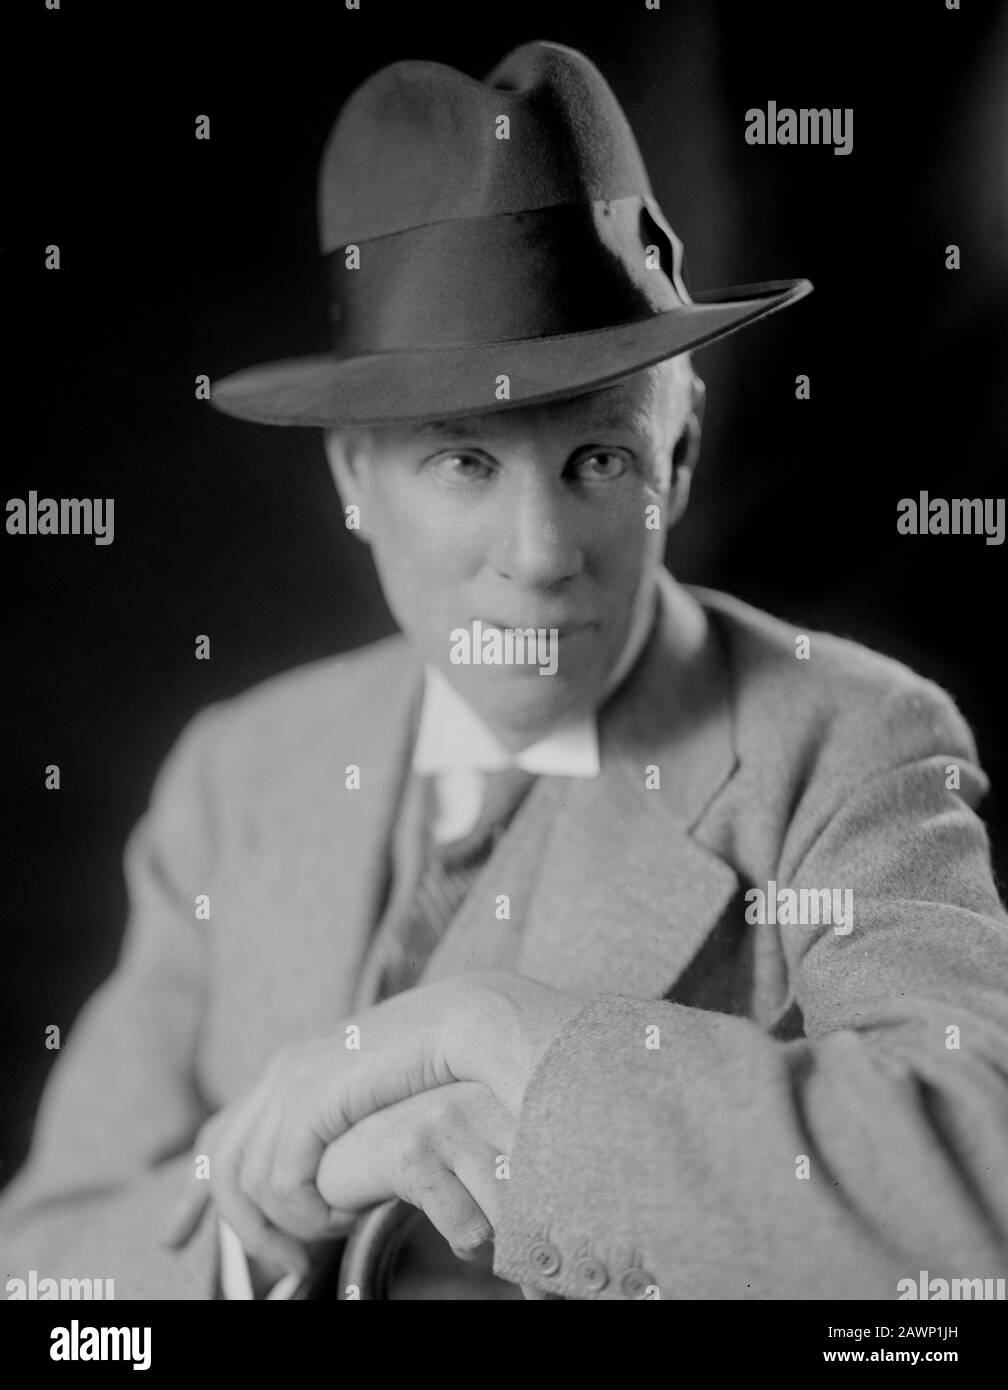 1931, Washington, USA: Der amerikanische Schriftsteller und Dramatiker SINCLAIR LEWIS (* 1885; † 1951), Nobelpreisträger für Literatur im Jahr 1930. Foto vorbei Stockfoto